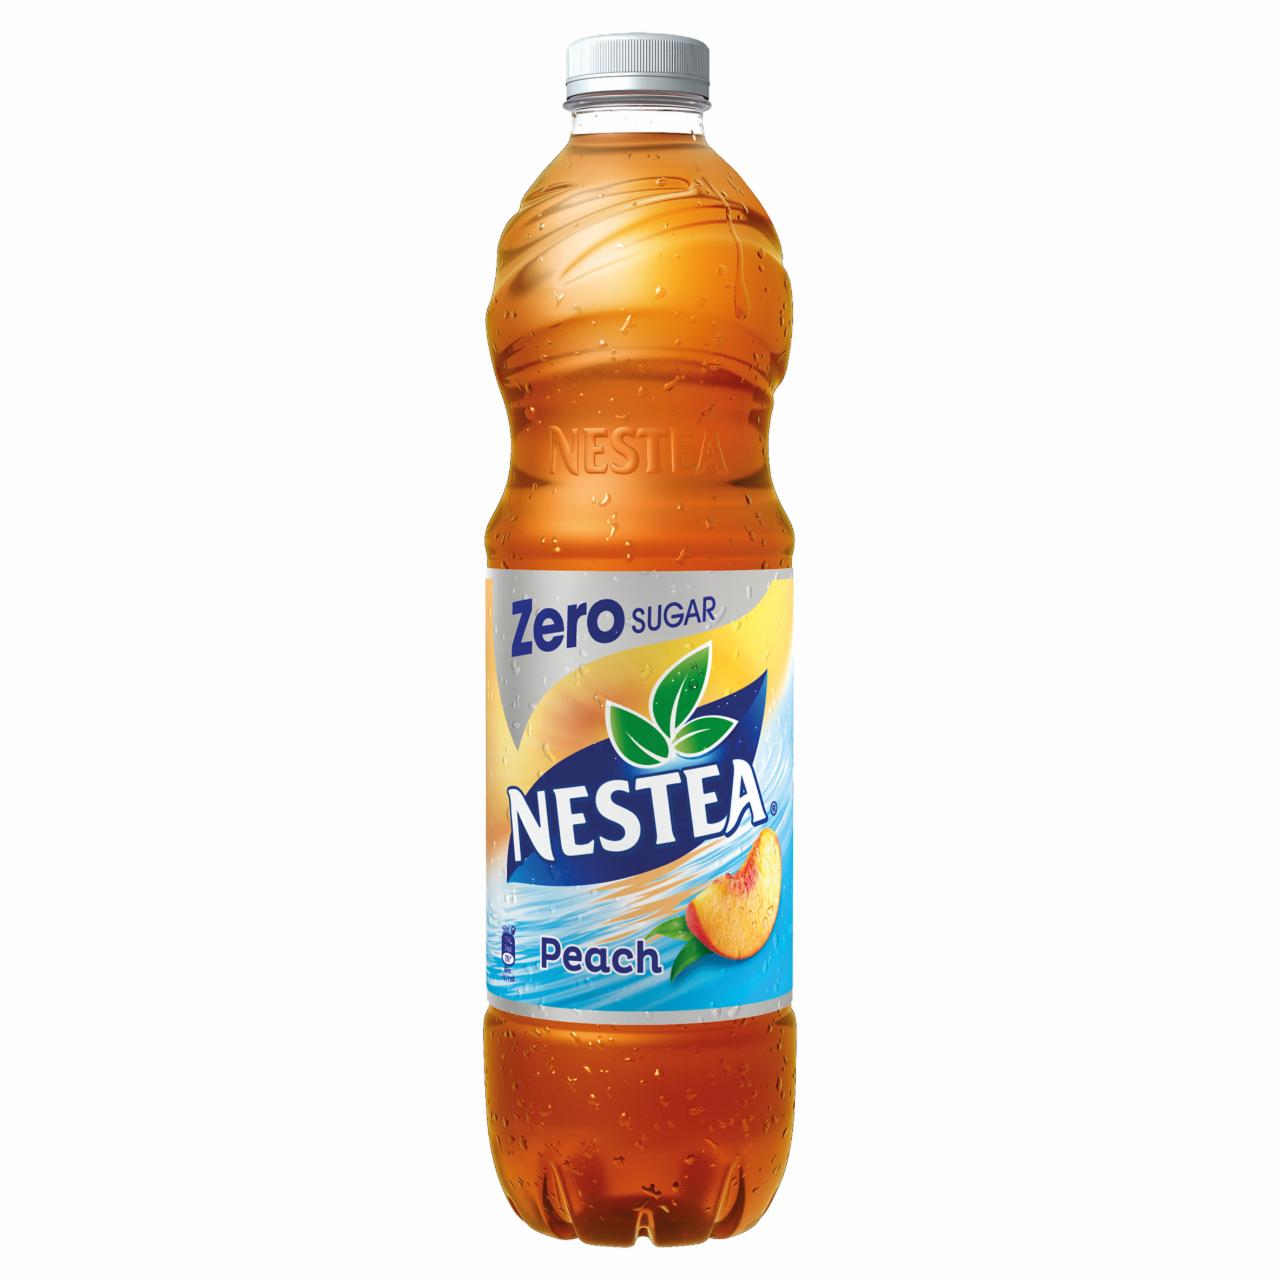 Képek - Nestea Zero őszibarack ízű cukormentes tea üdítőital édesítőszerekkel 1,5 l